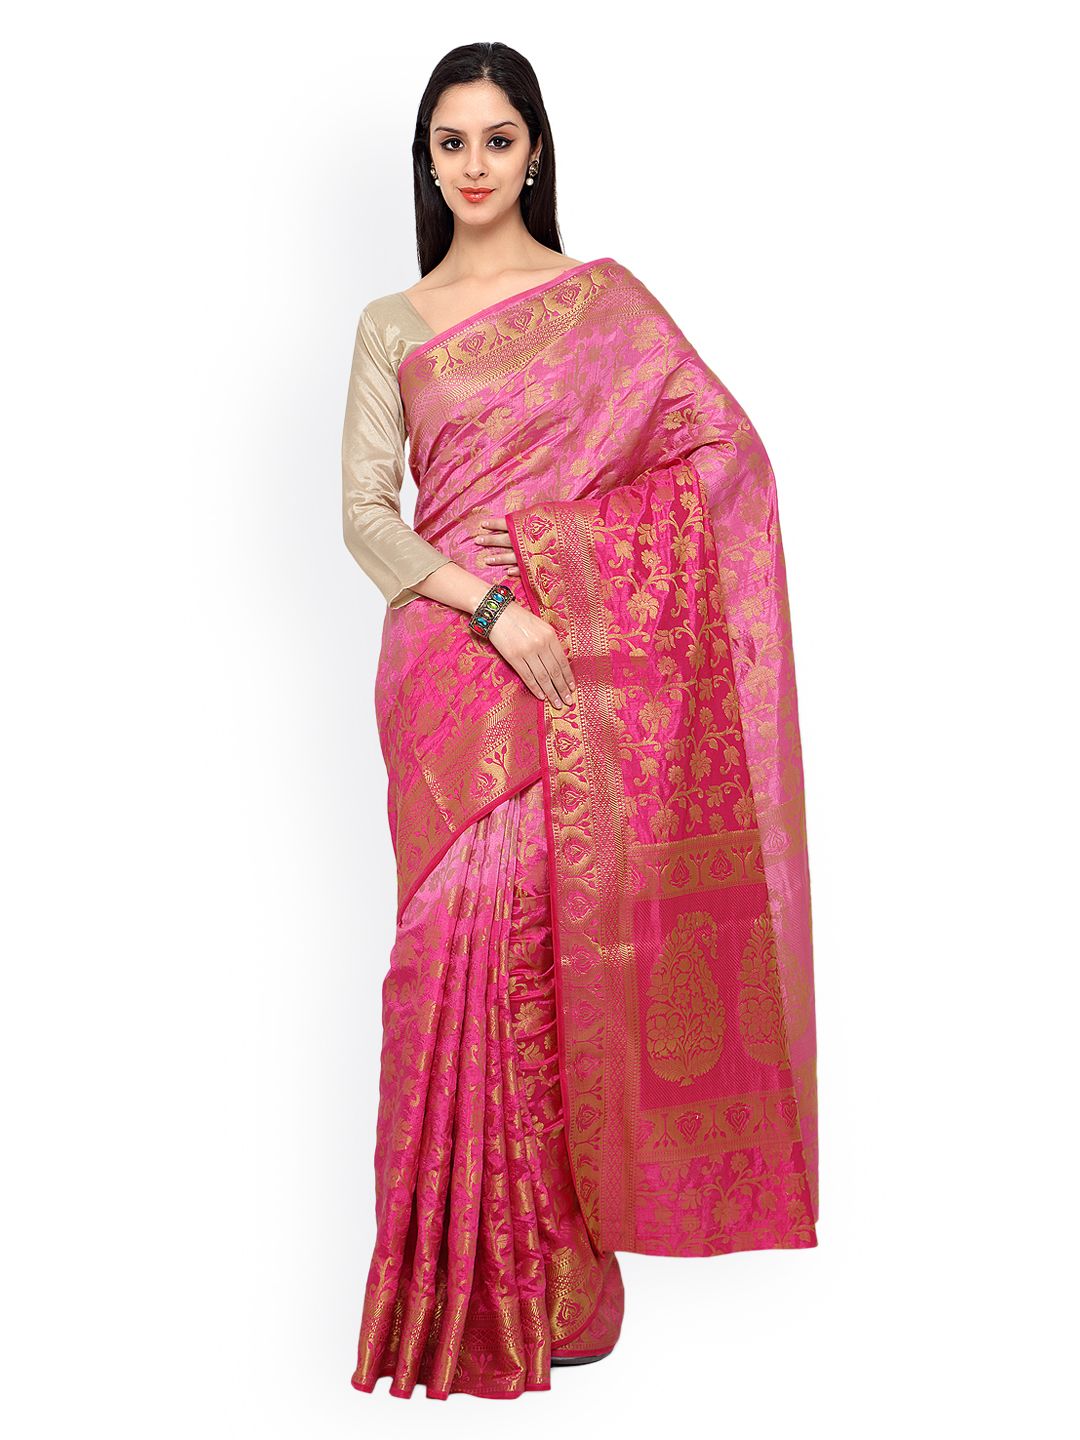 Varkala Silk Sarees Pink Kanjeevaram Tussar Silk Traditional Saree Price in India